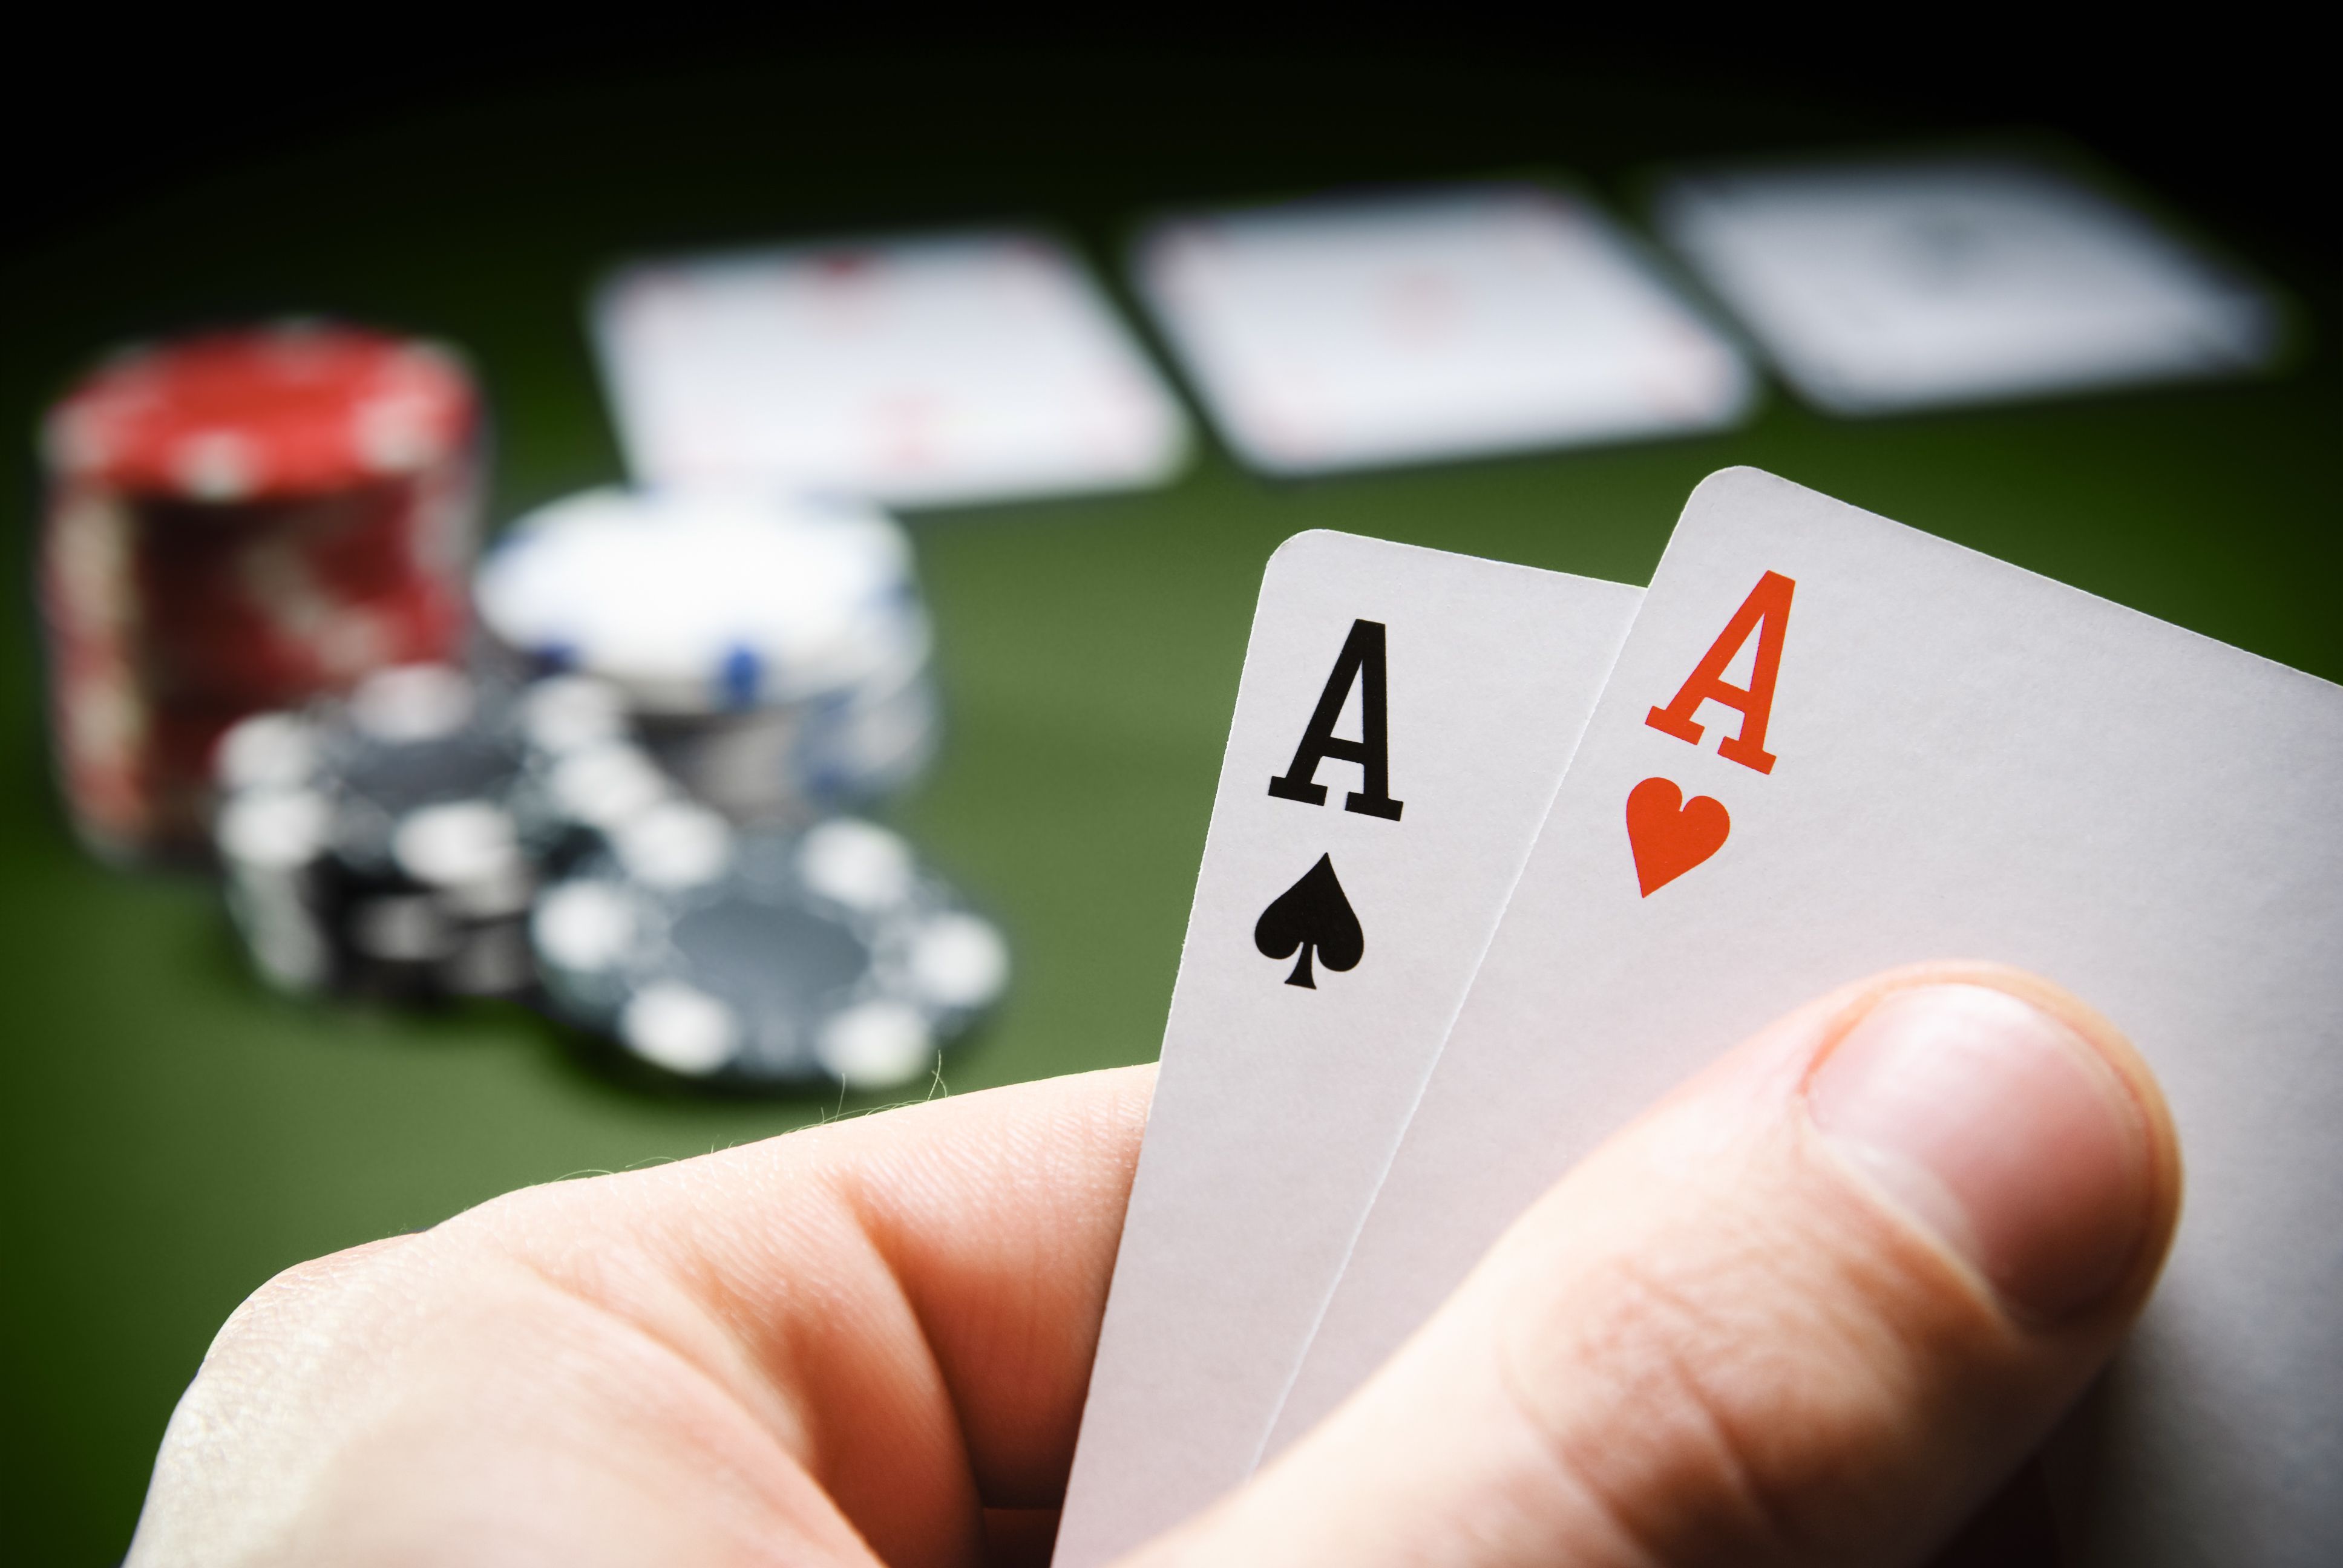 Poker spielen leicht gemacht: Regeln, Tipps und Begriffe für ...